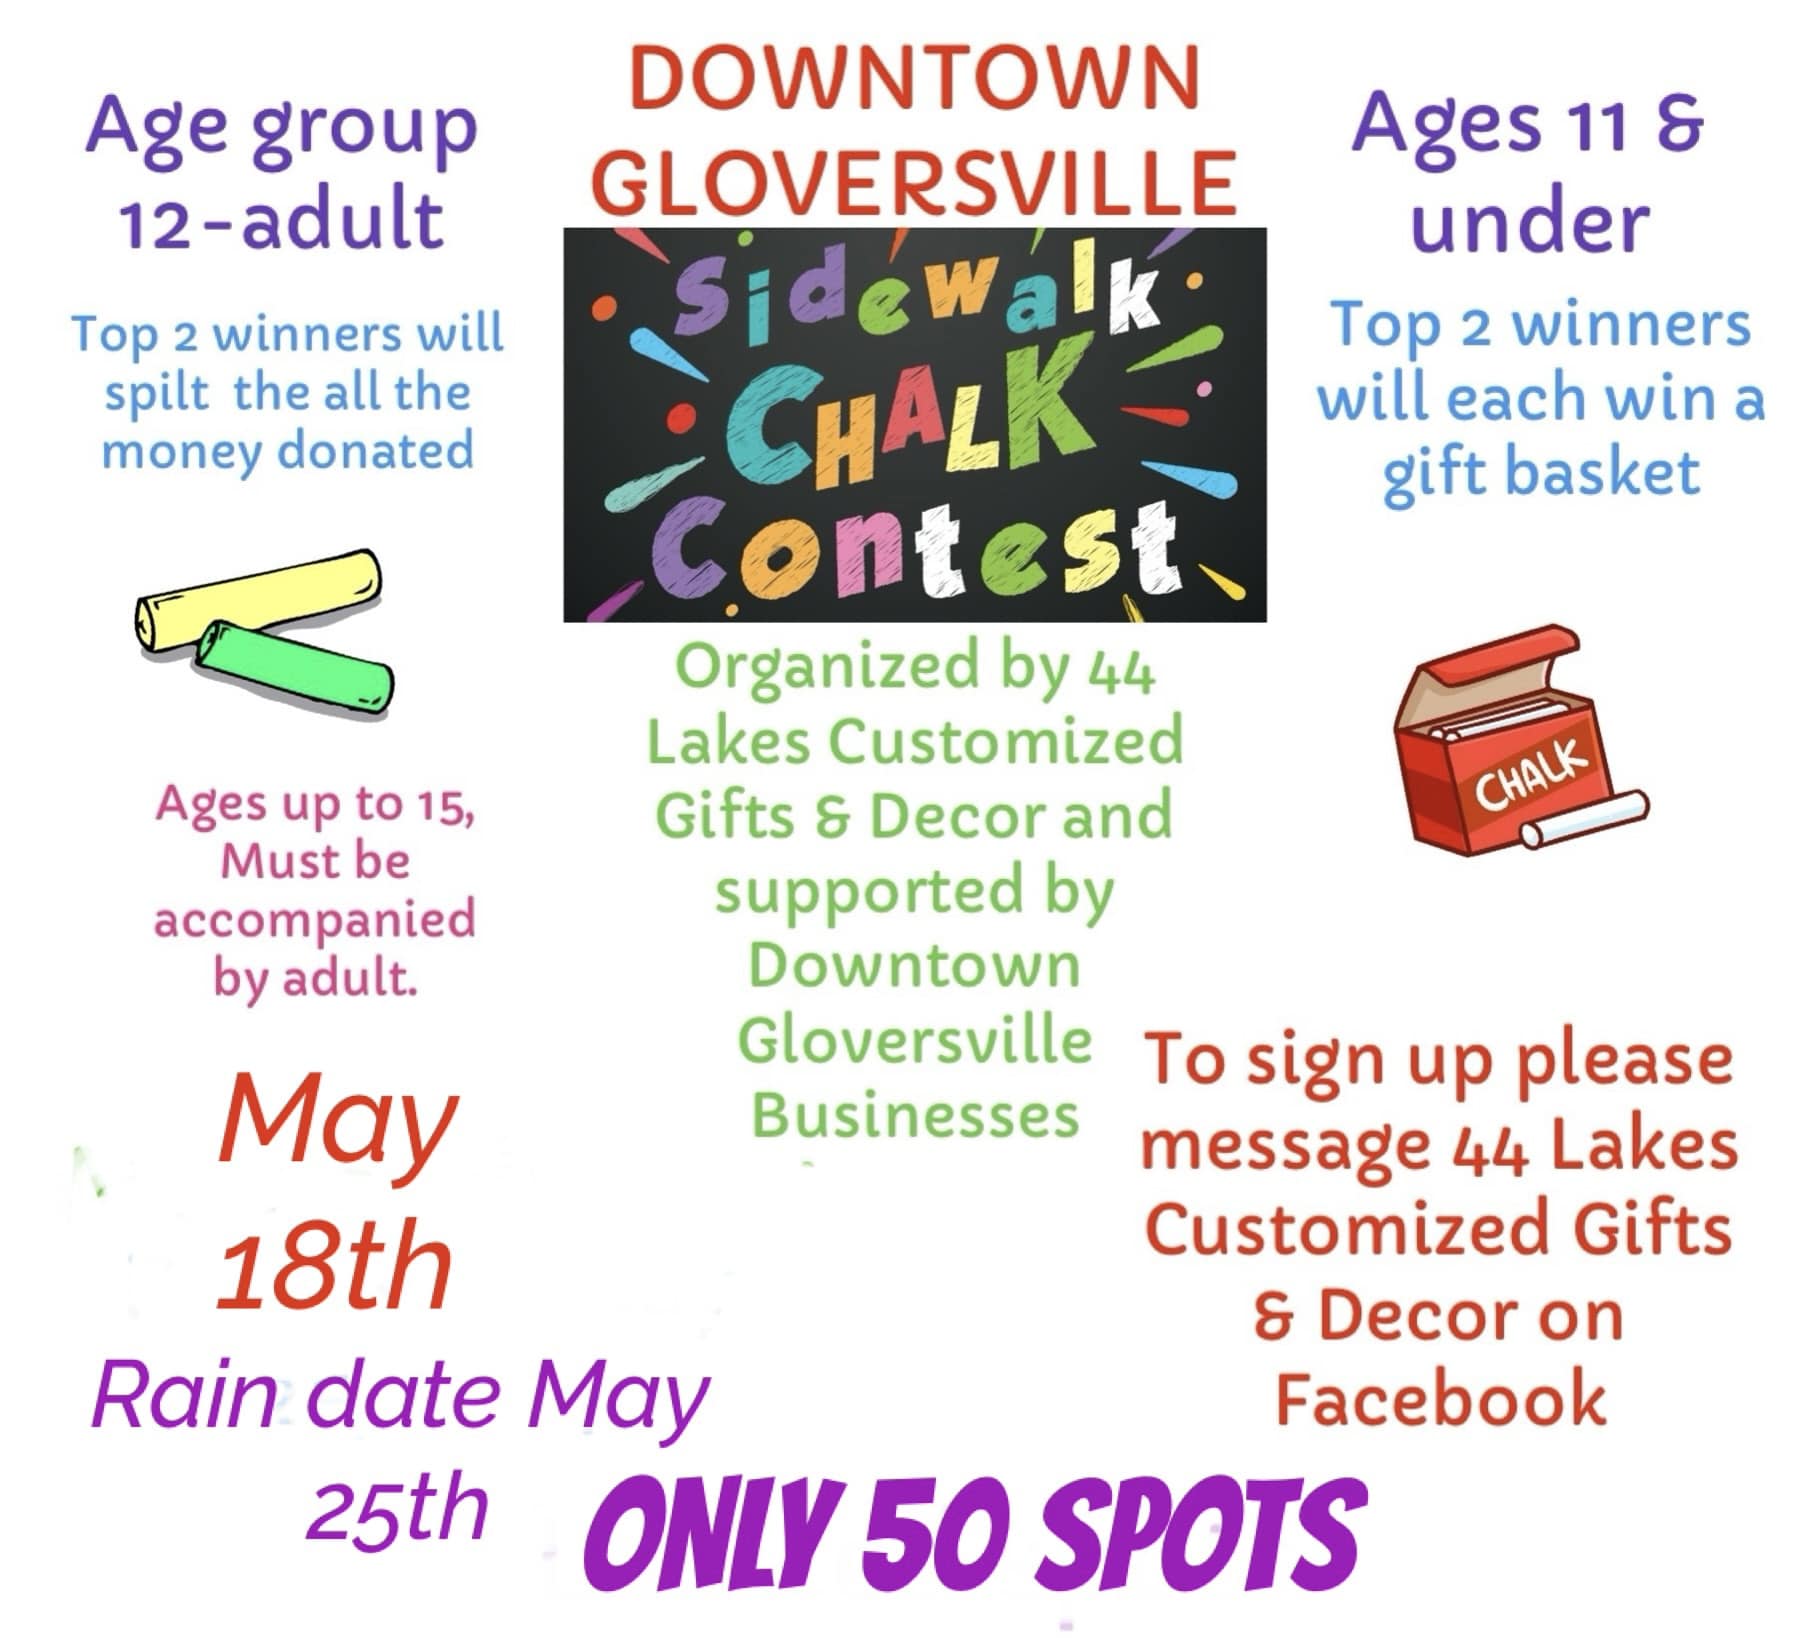 Gloversville Sidewalk Chalk Contest May 18